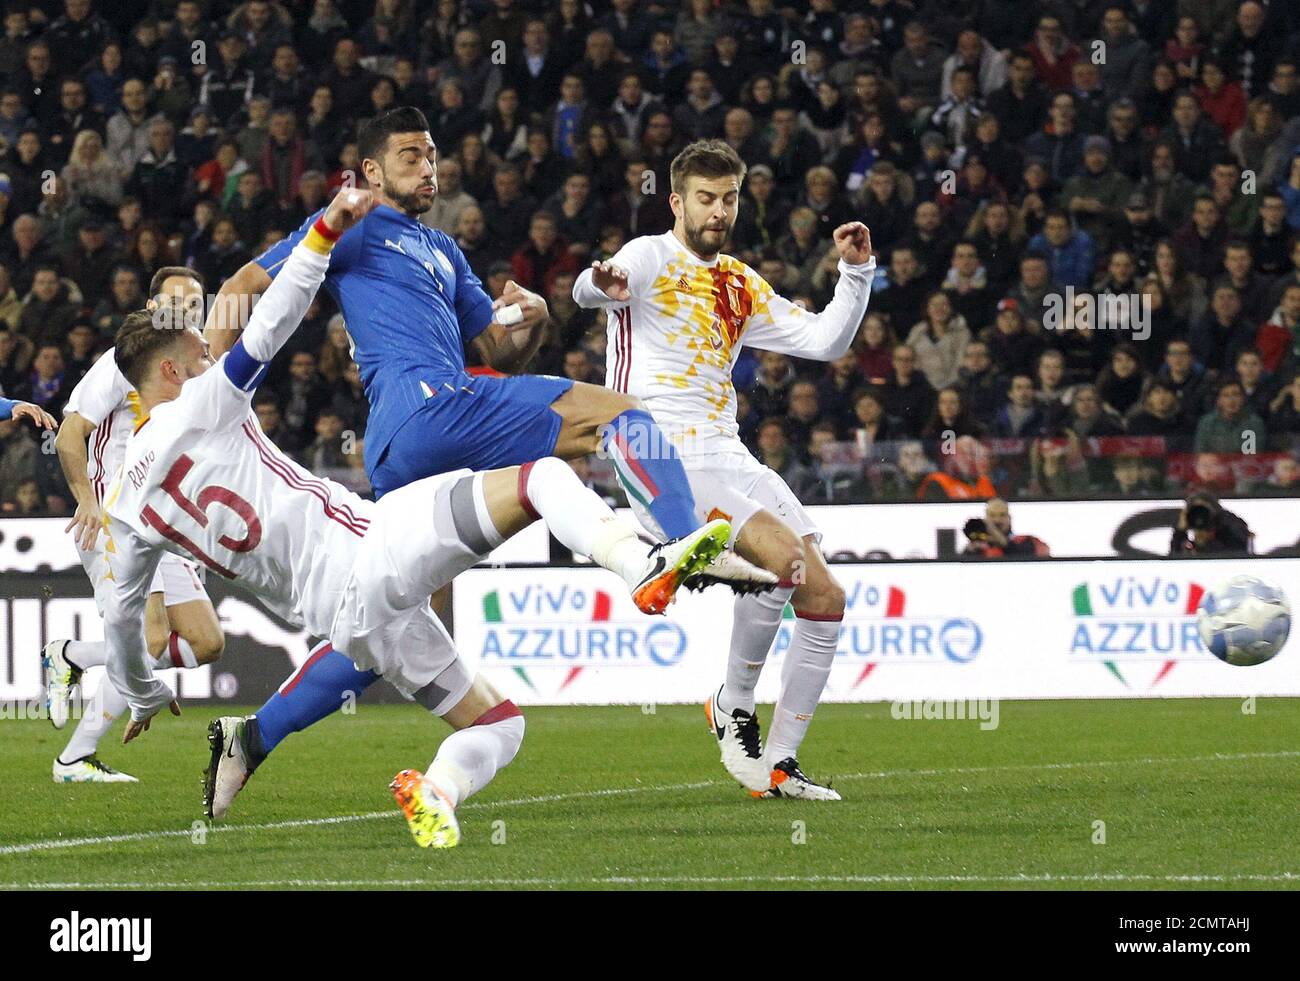 Fußball - Italien gegen Spanien - Internationales Freundschaftsspiel -  Friaul Stadion, Udine, Italien - 24/03/16 der italienische Graziano